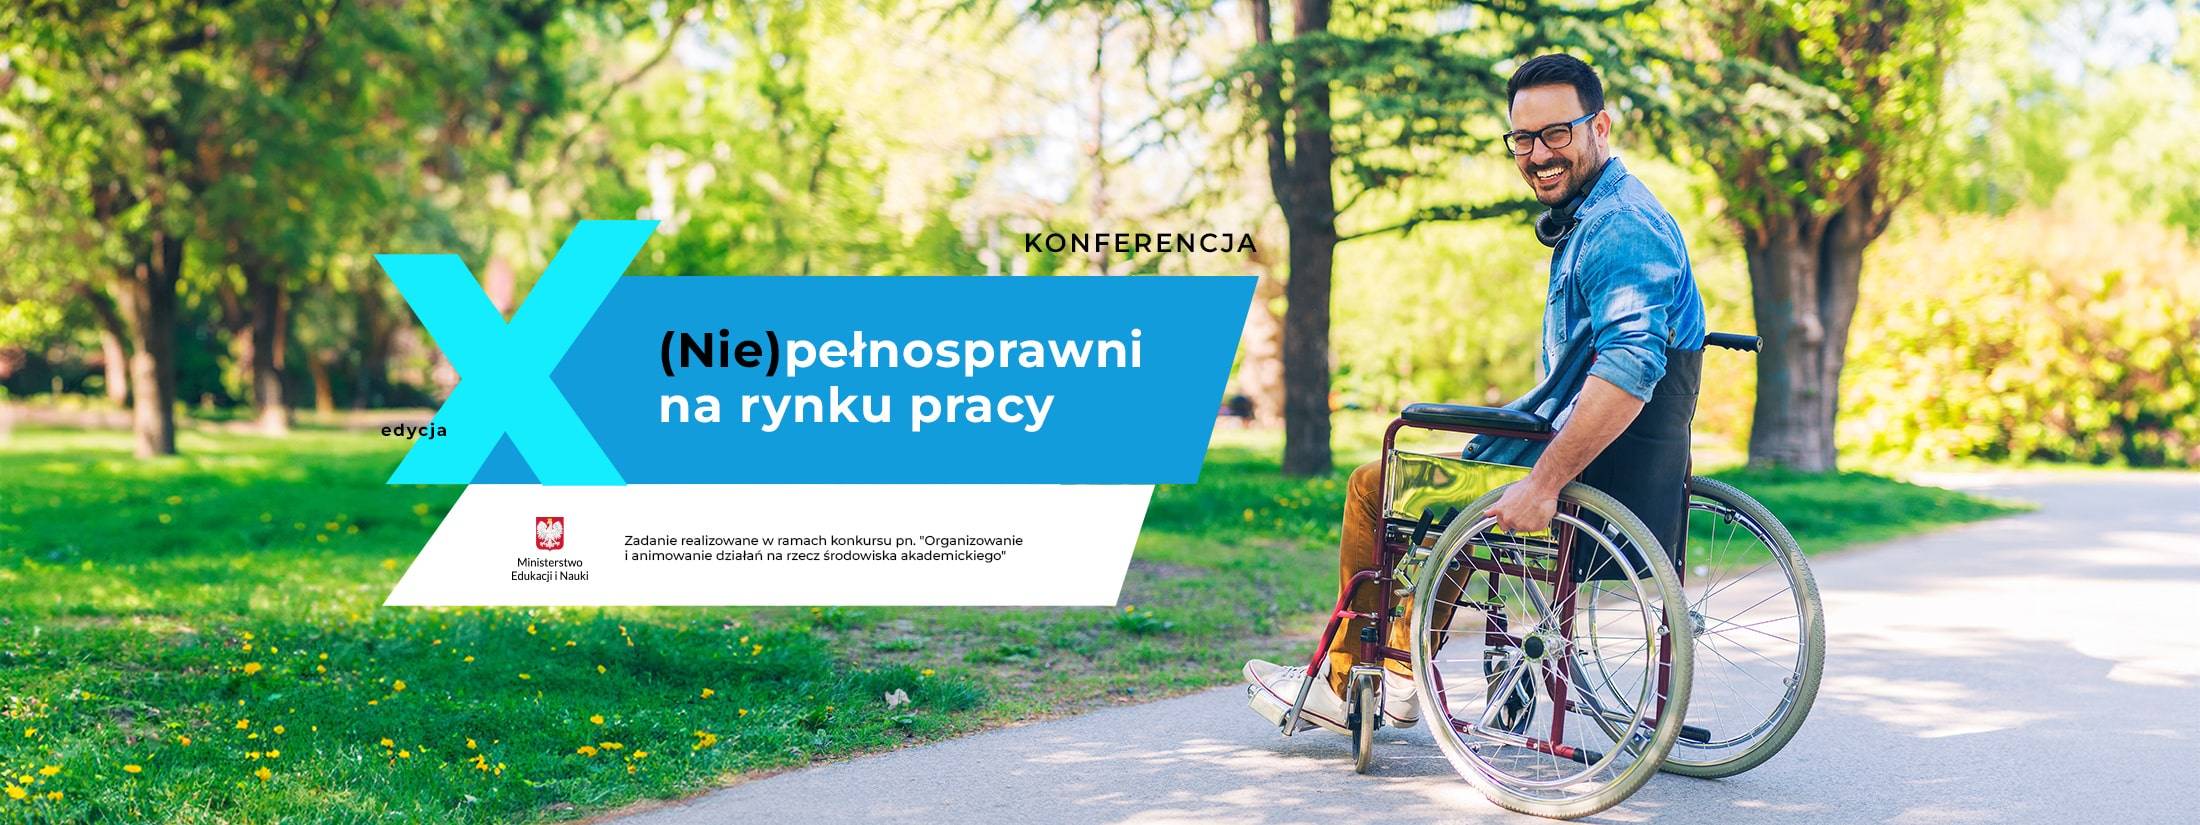 Baner reklamowy Konferencja Niepełnosprawni na rynku pracy